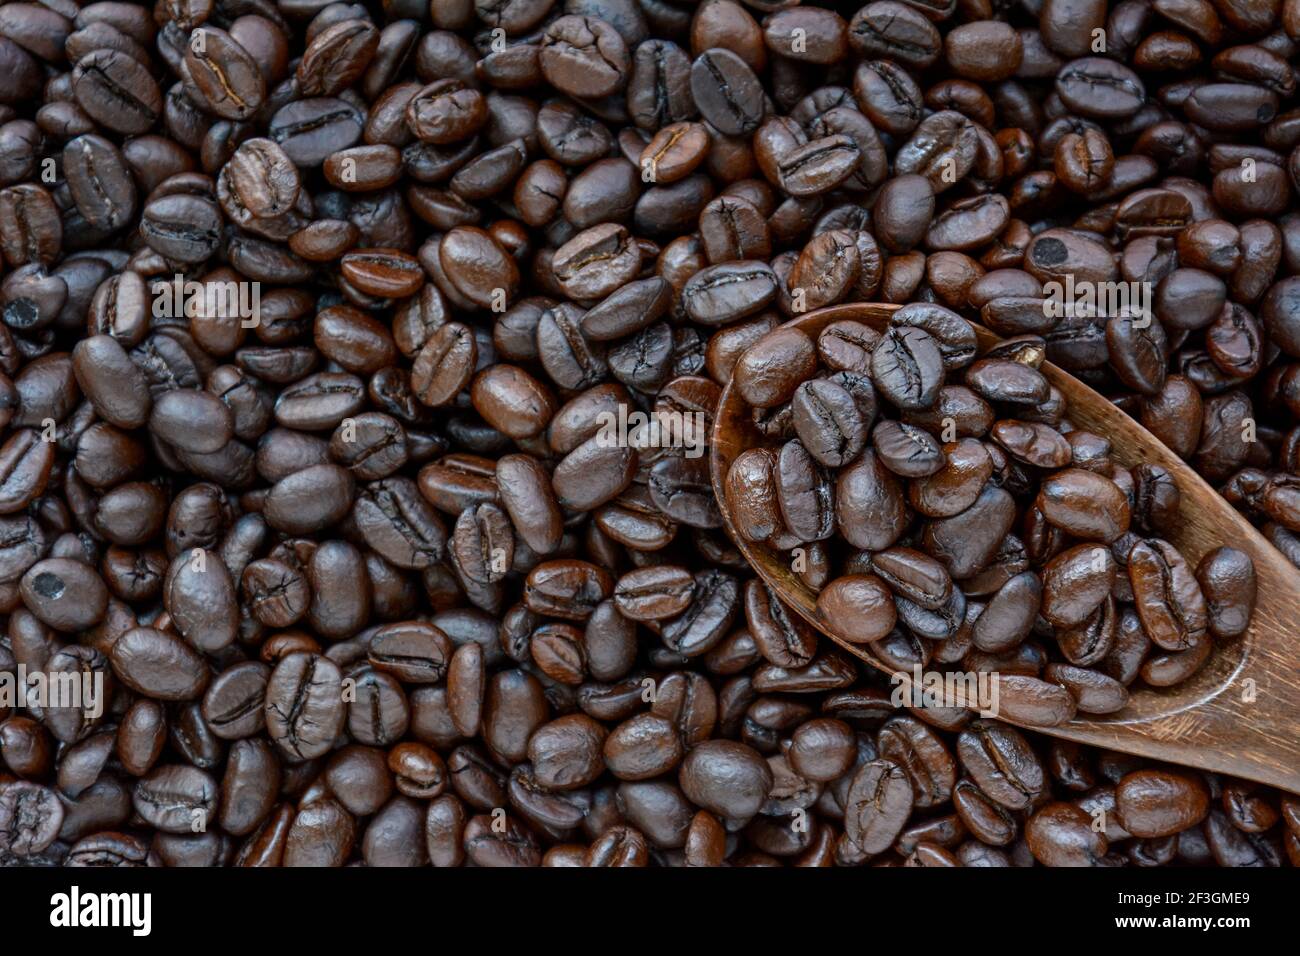 Löffel Kaffeebohnen auf Kaffeebohnenhaufen - Grenze Design Stockfoto